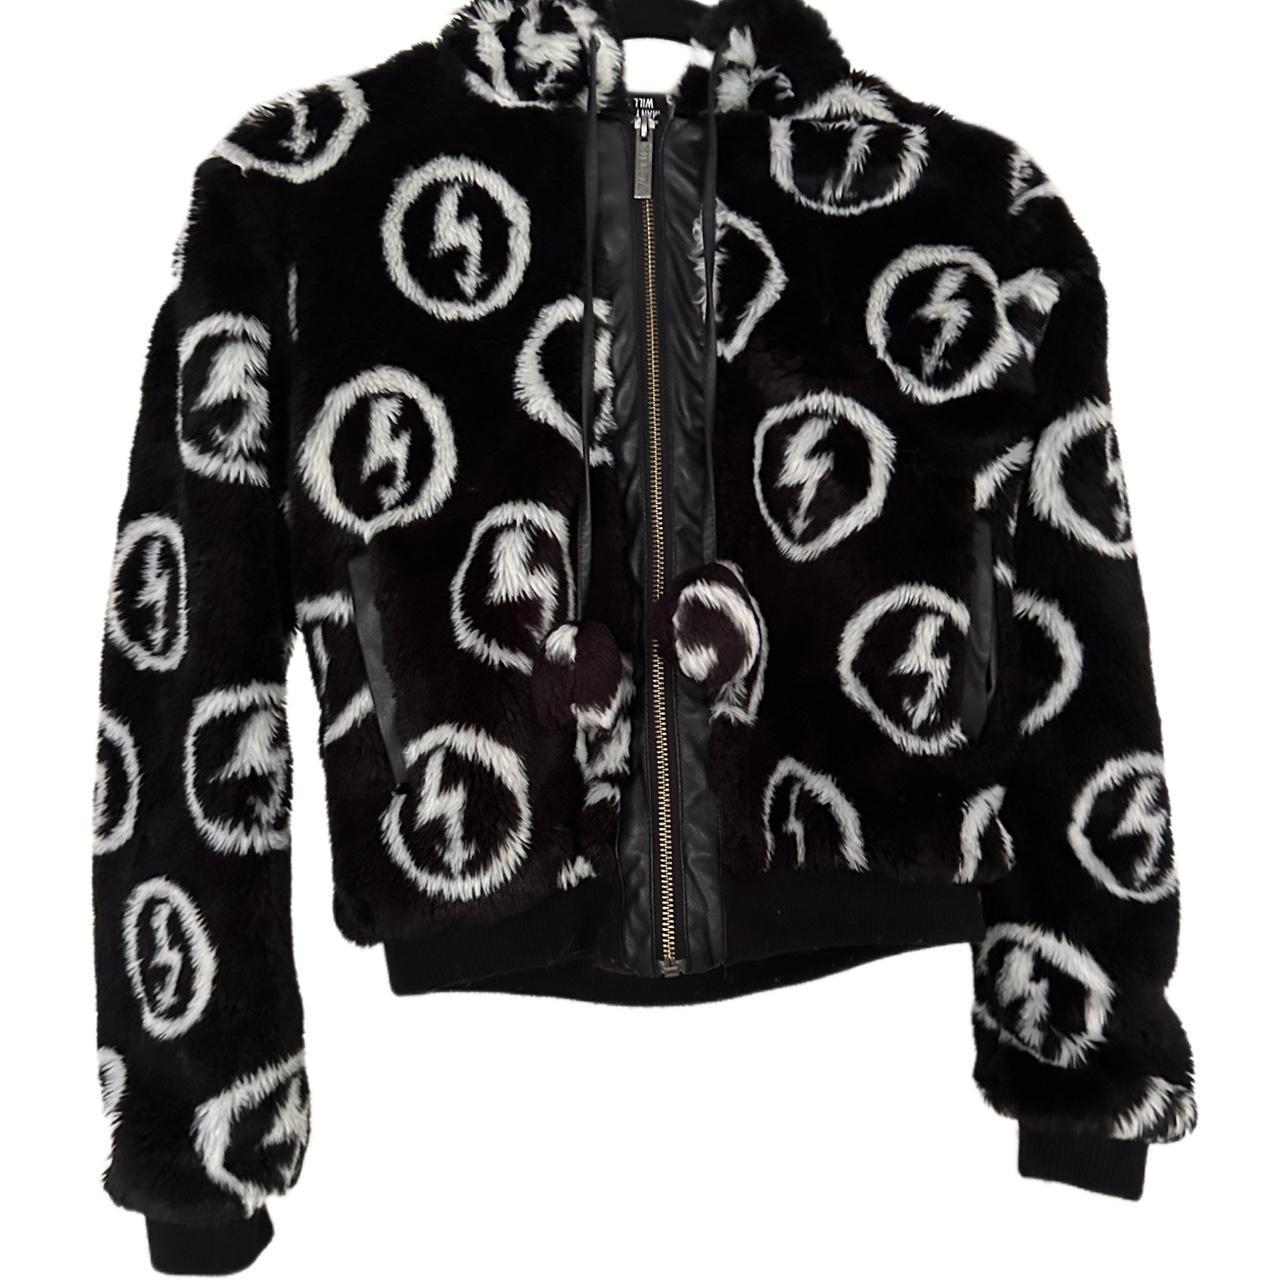 Rare discontinued Killstar x Marilyn Manson jacket.... - Depop